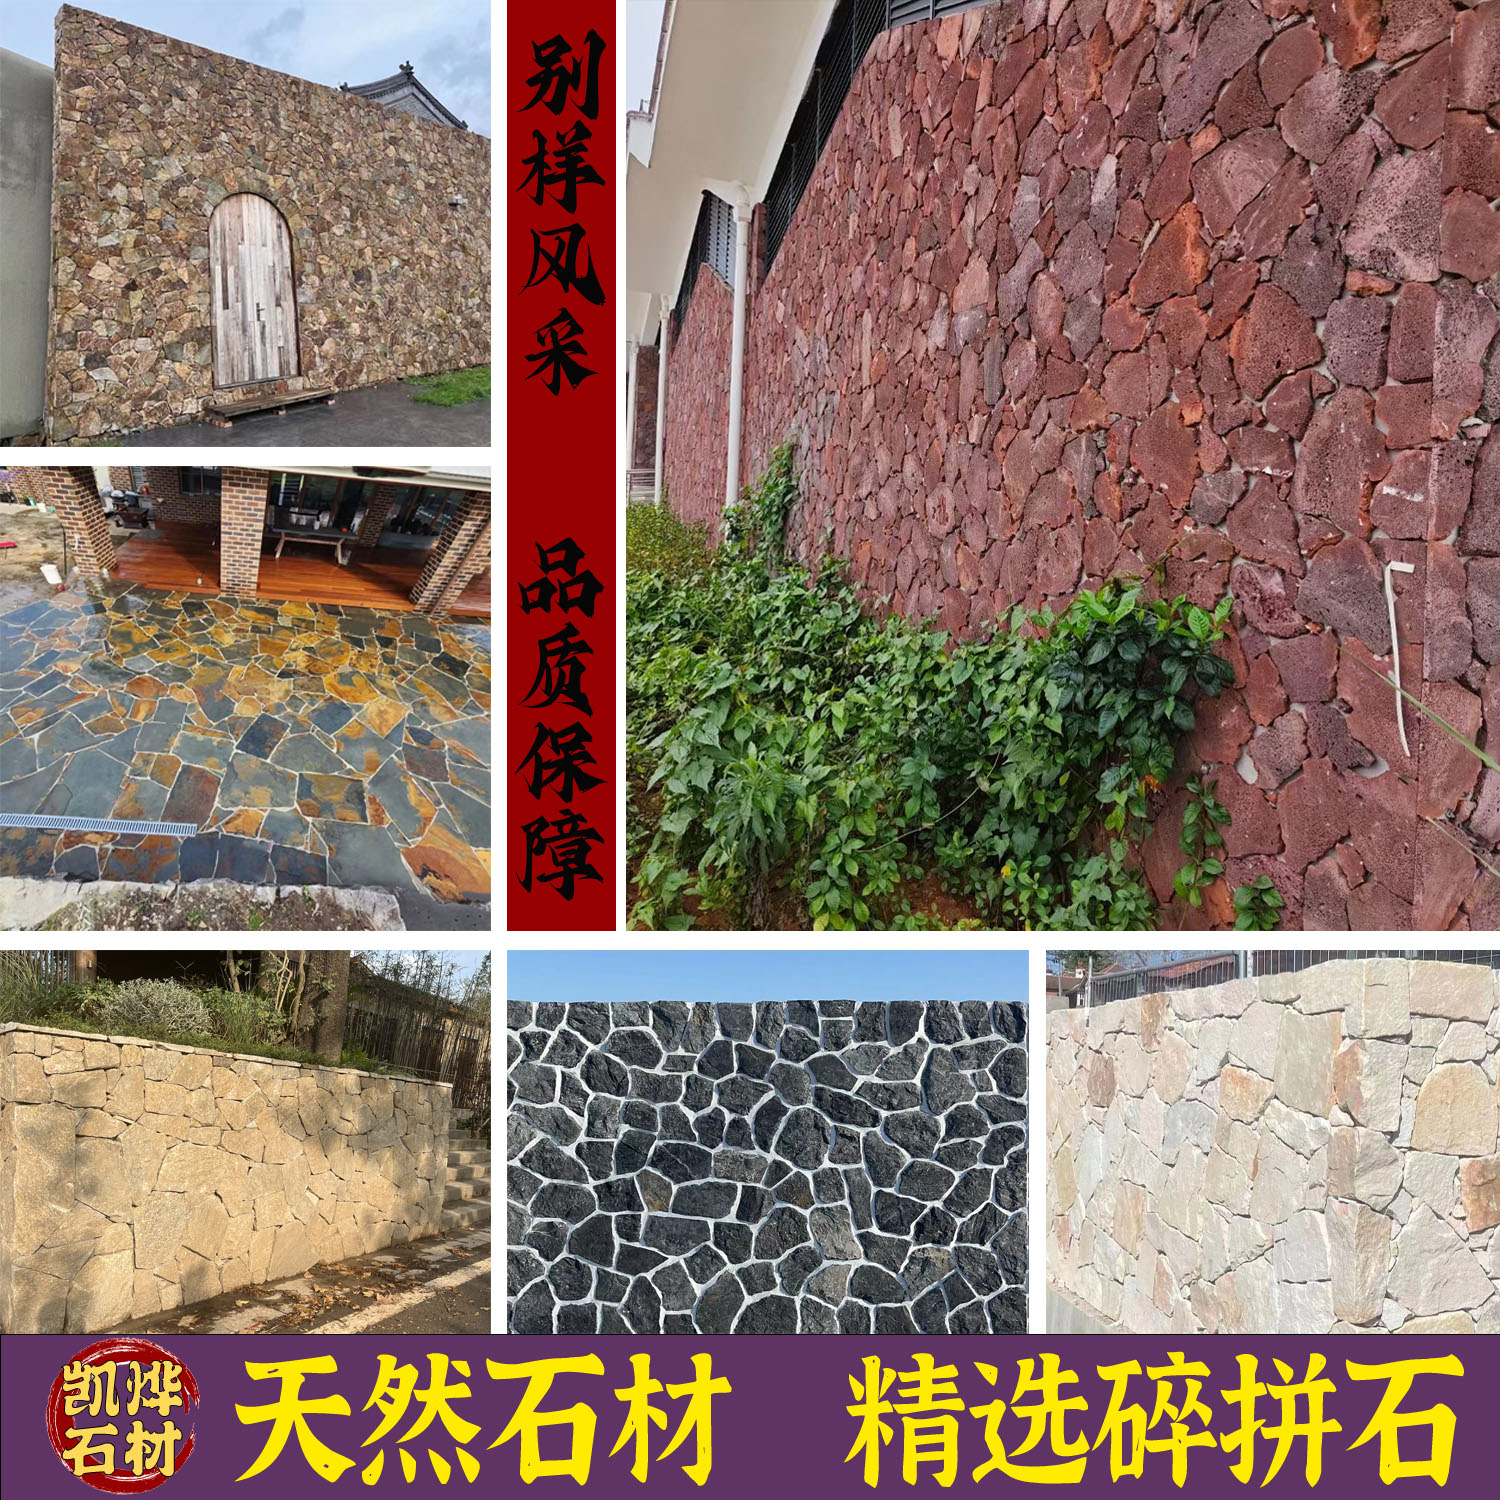 天然文化石不规则碎拼石乱形石材别墅外墙砖片石背景墙庭院石头墙